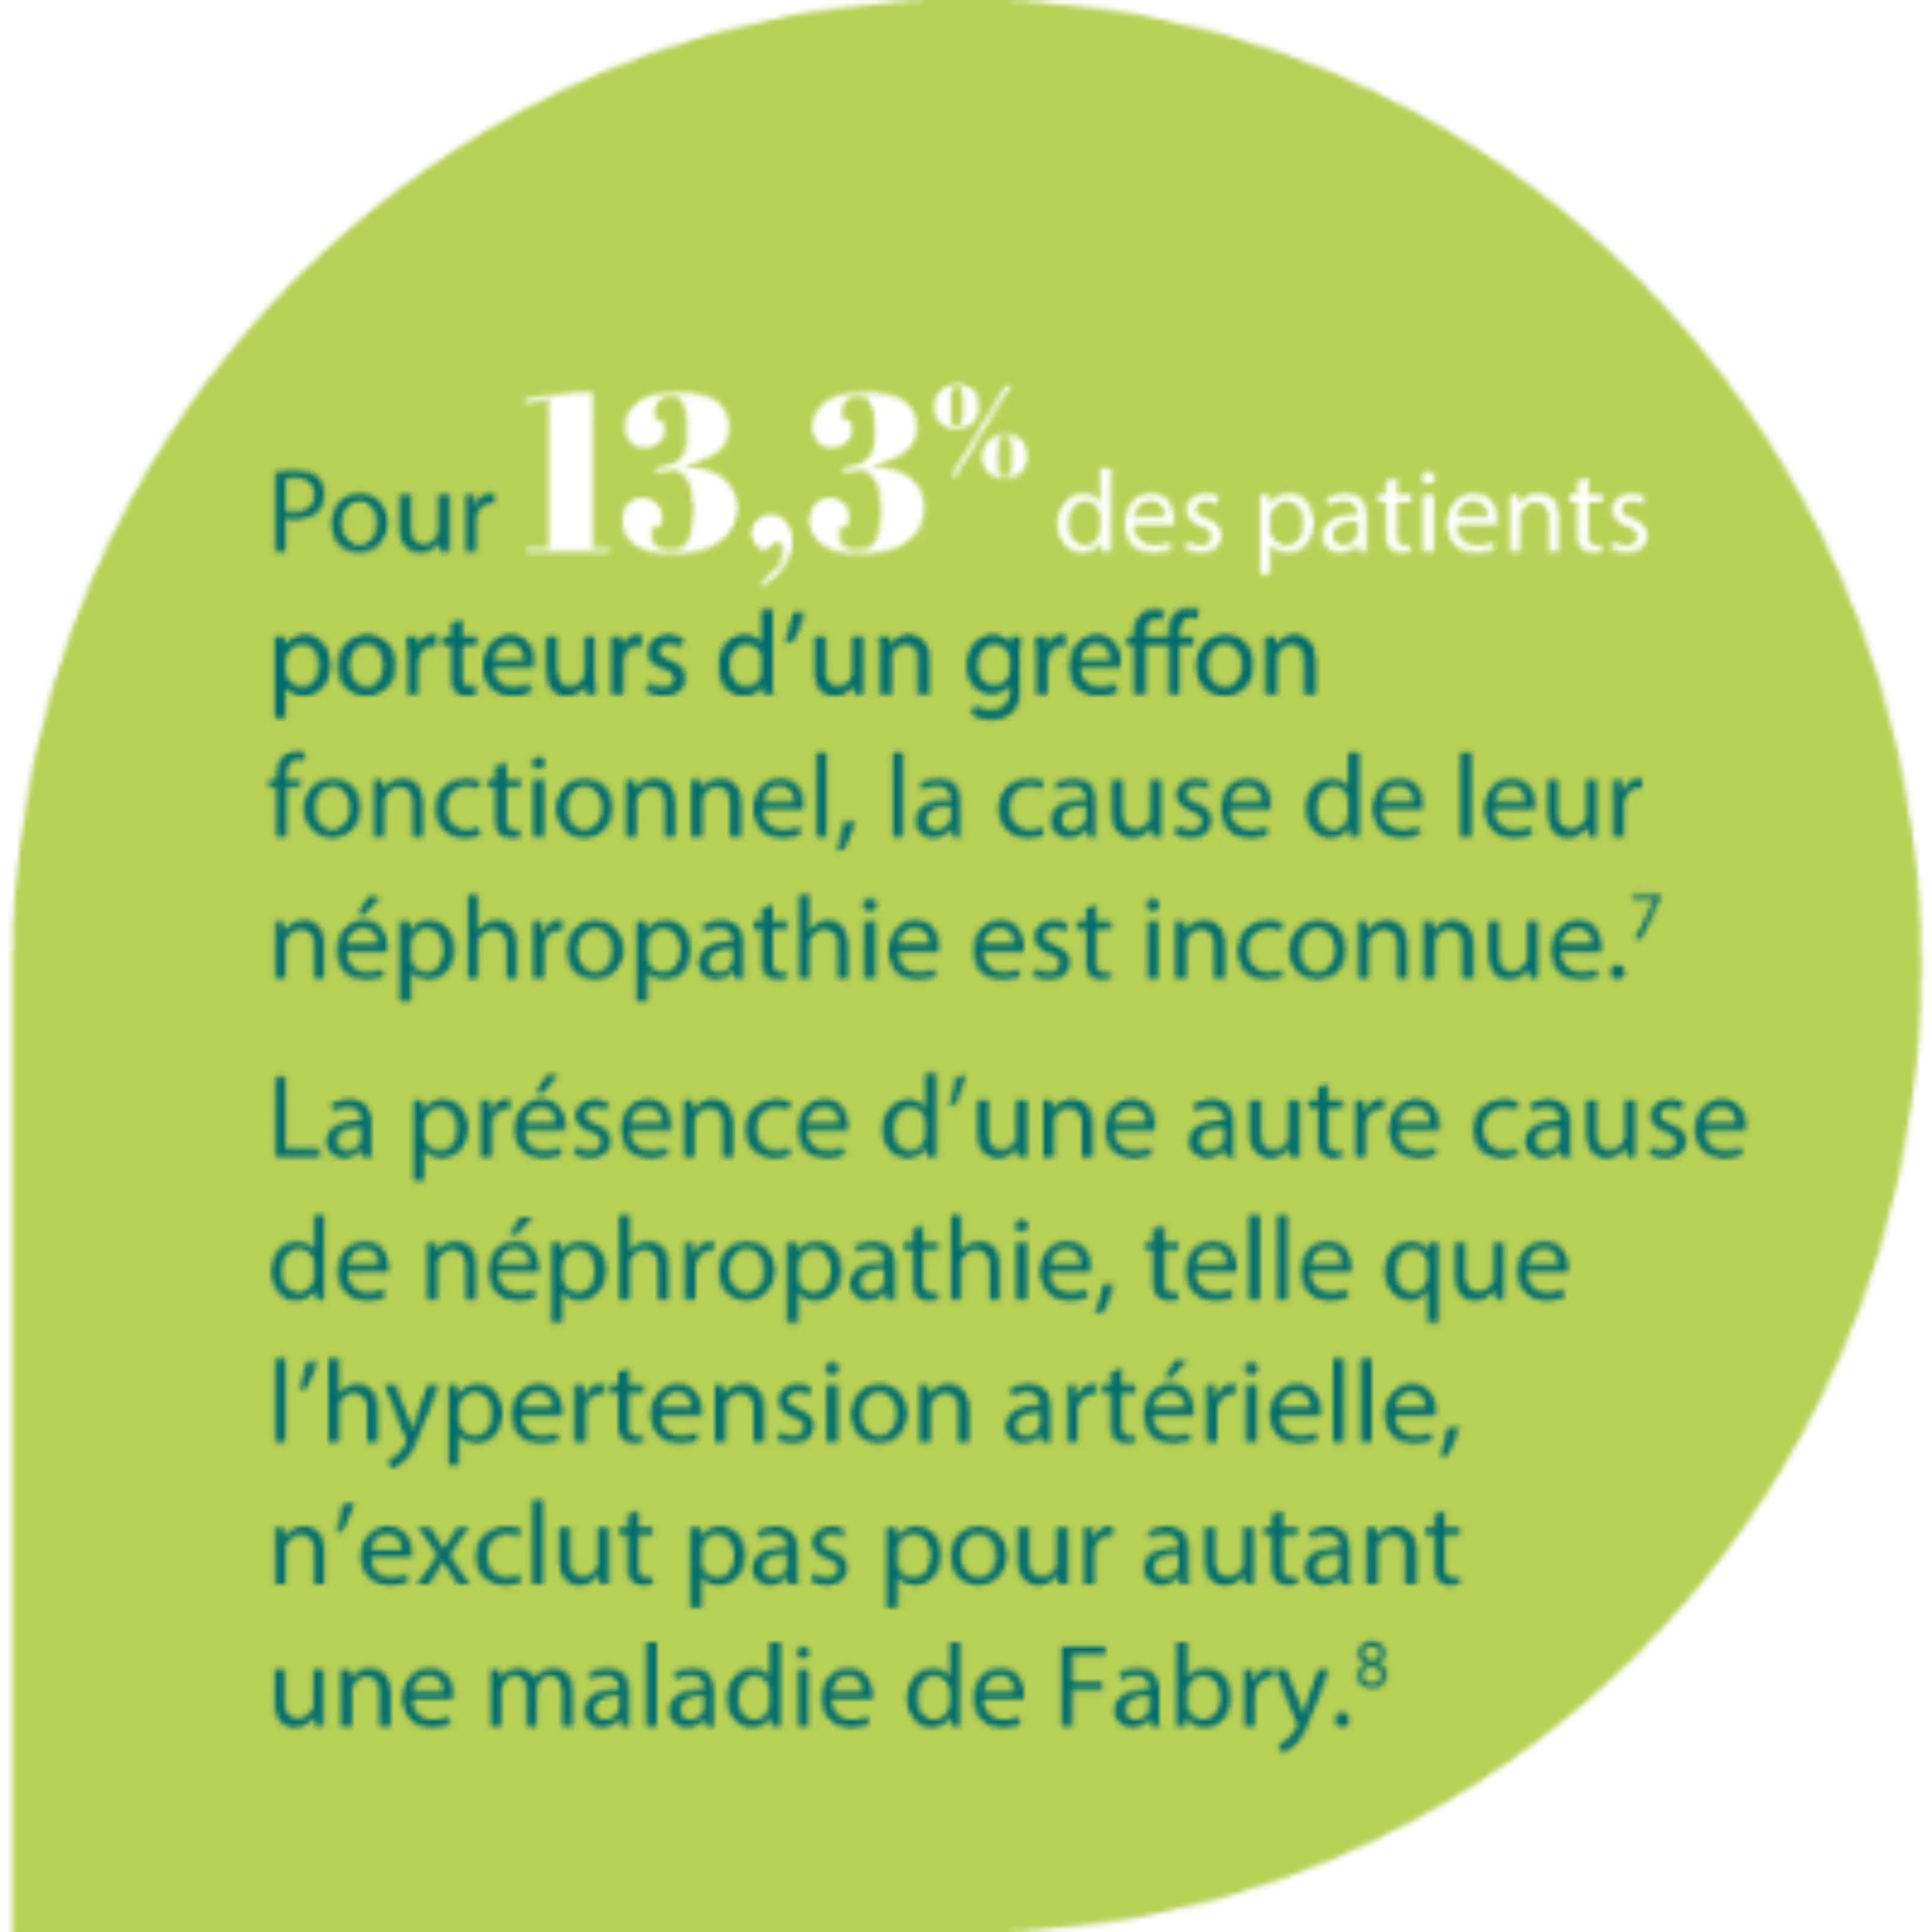 Répartition des maladies rénales initiales des patients greffés rénaux en France à fin 2019